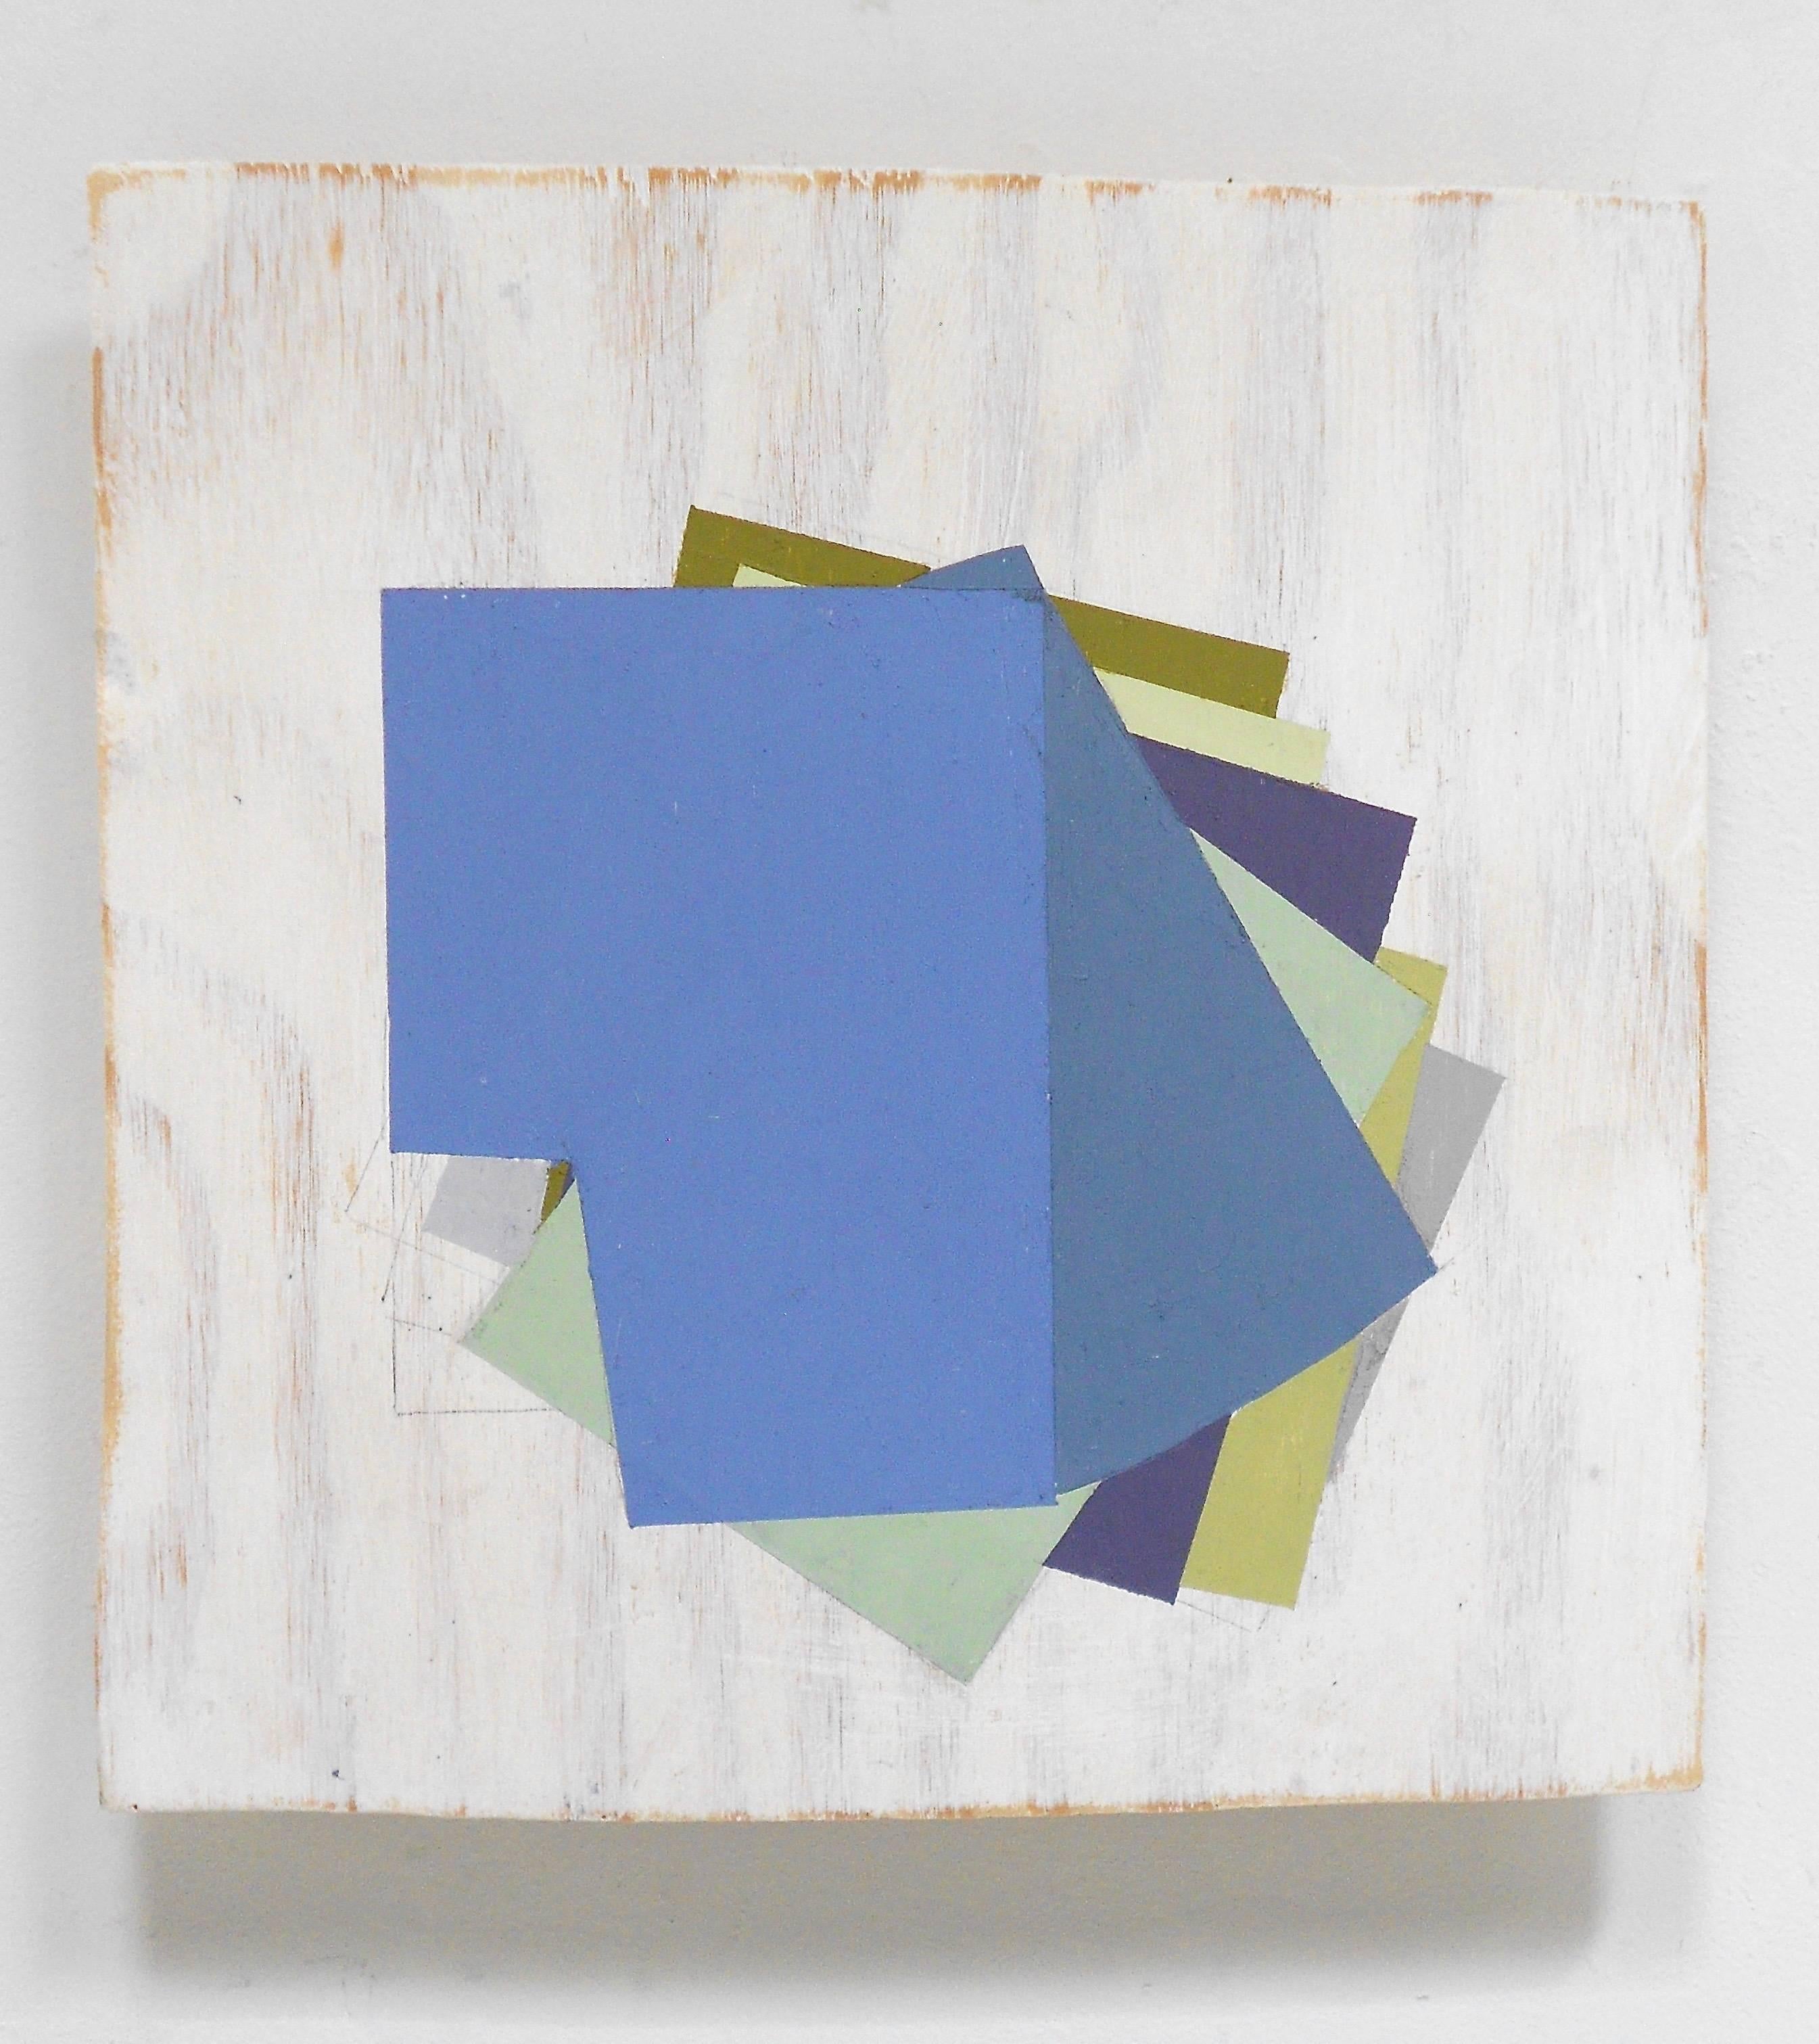 « Fan », huile sur bois technique mixte géométrique abstraite bleue, noire et colorée - Mixed Media Art de Jean Feinberg